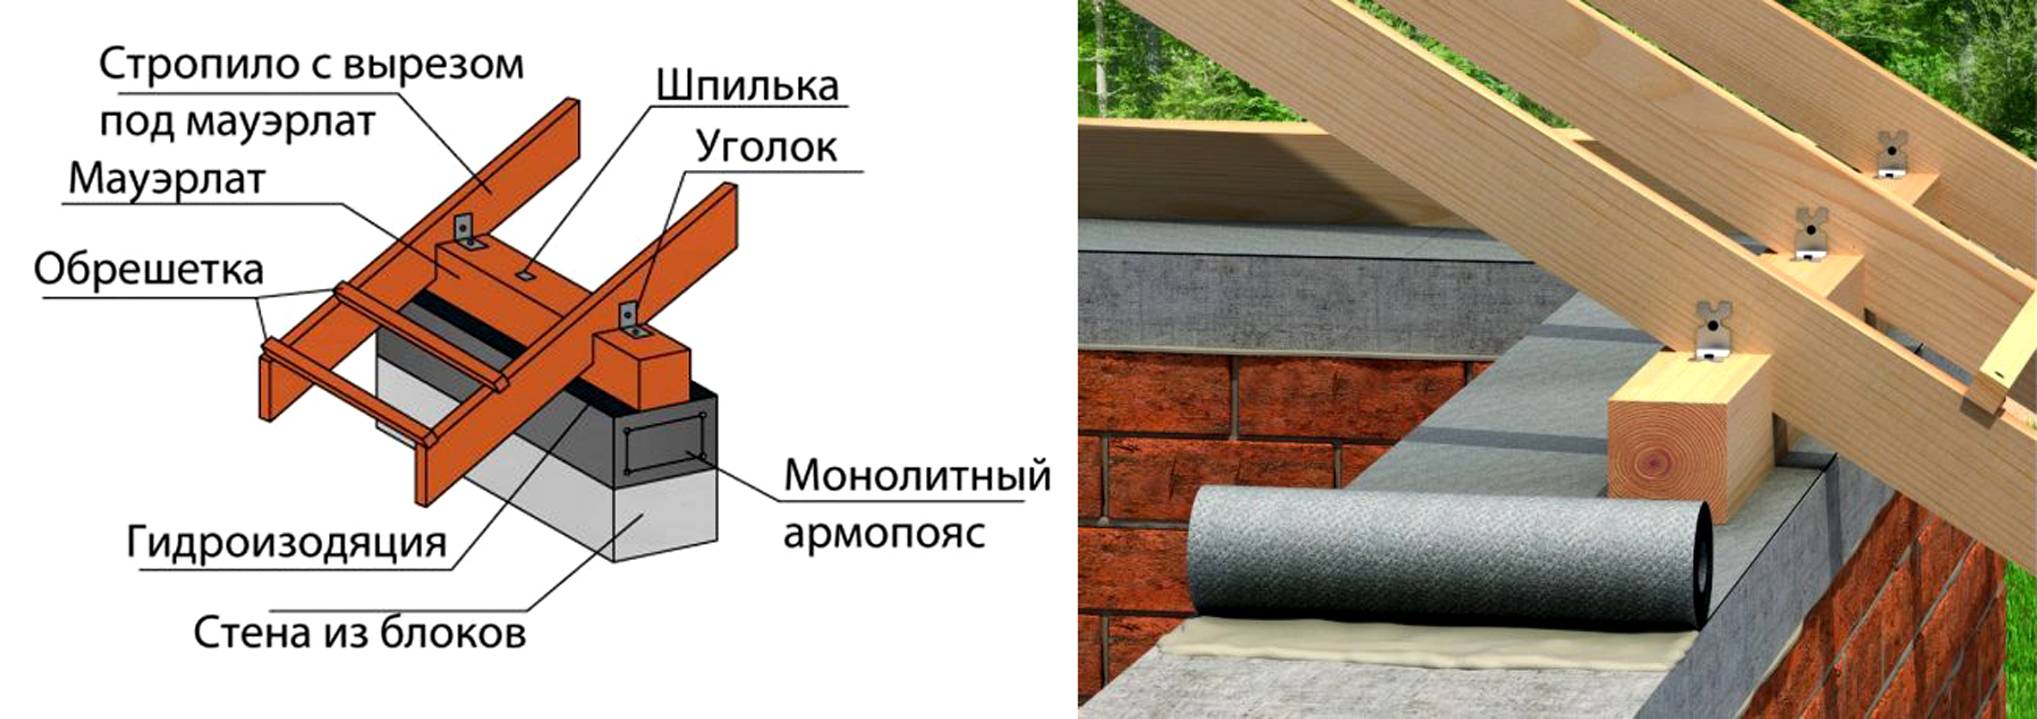 Выбор размеров и сечения мауэрлата при строительстве крыши